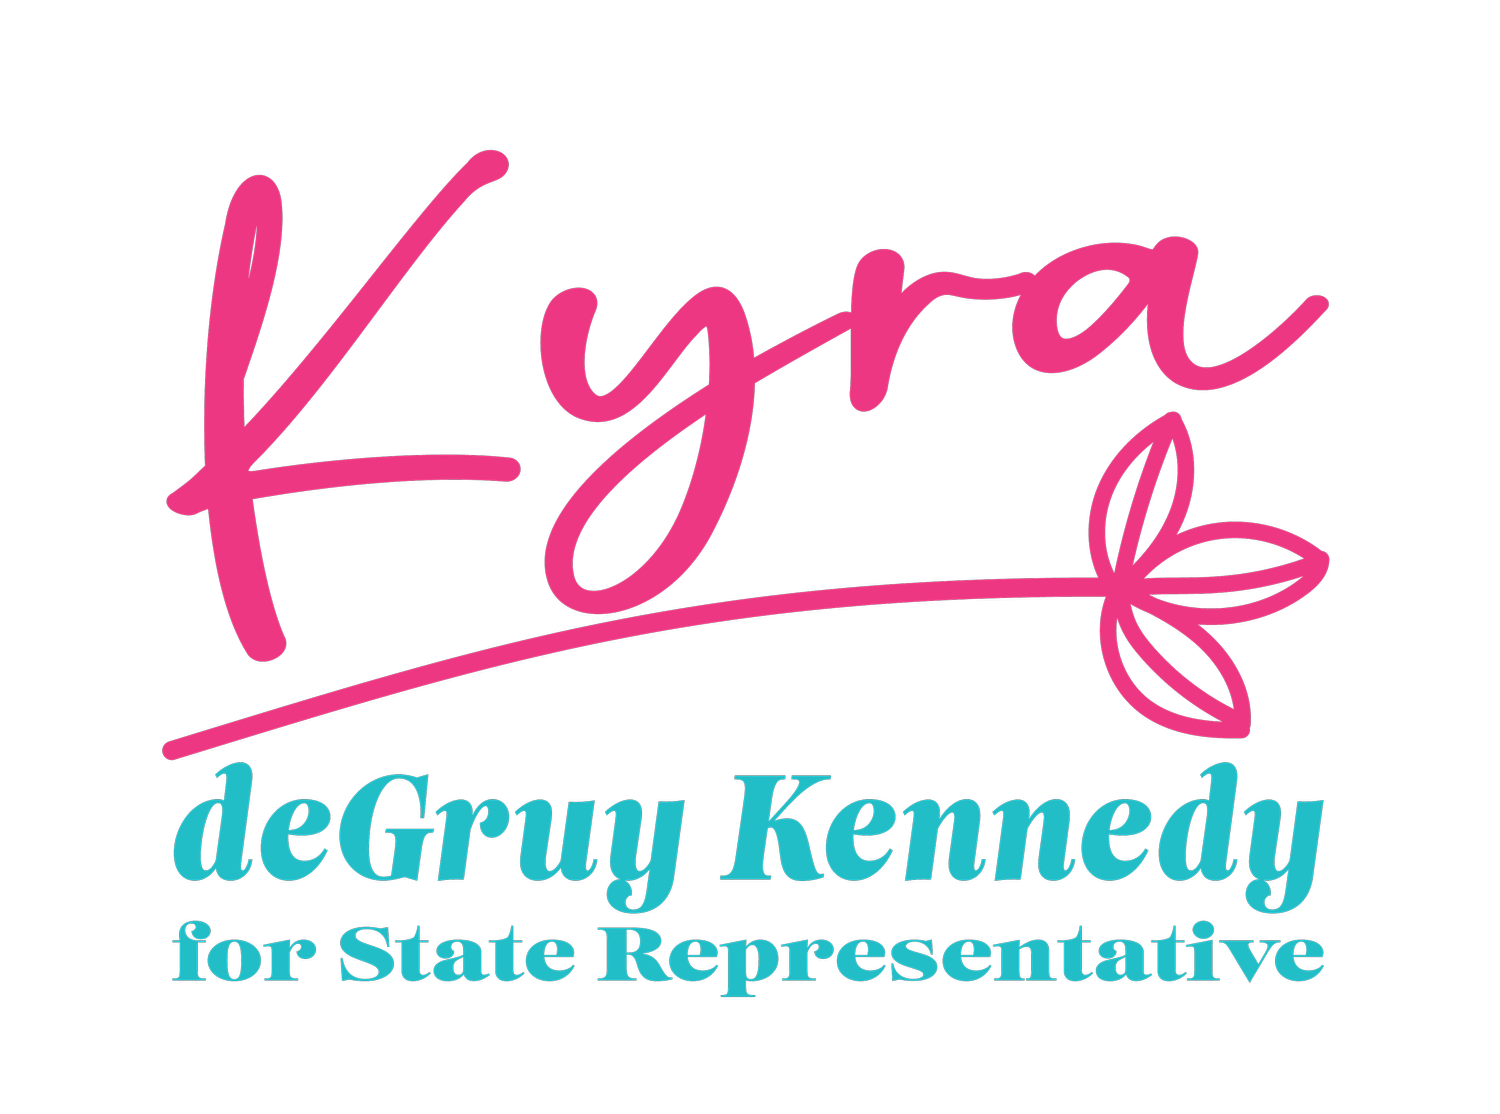 Kyra deGruy Kennedy for Colorado